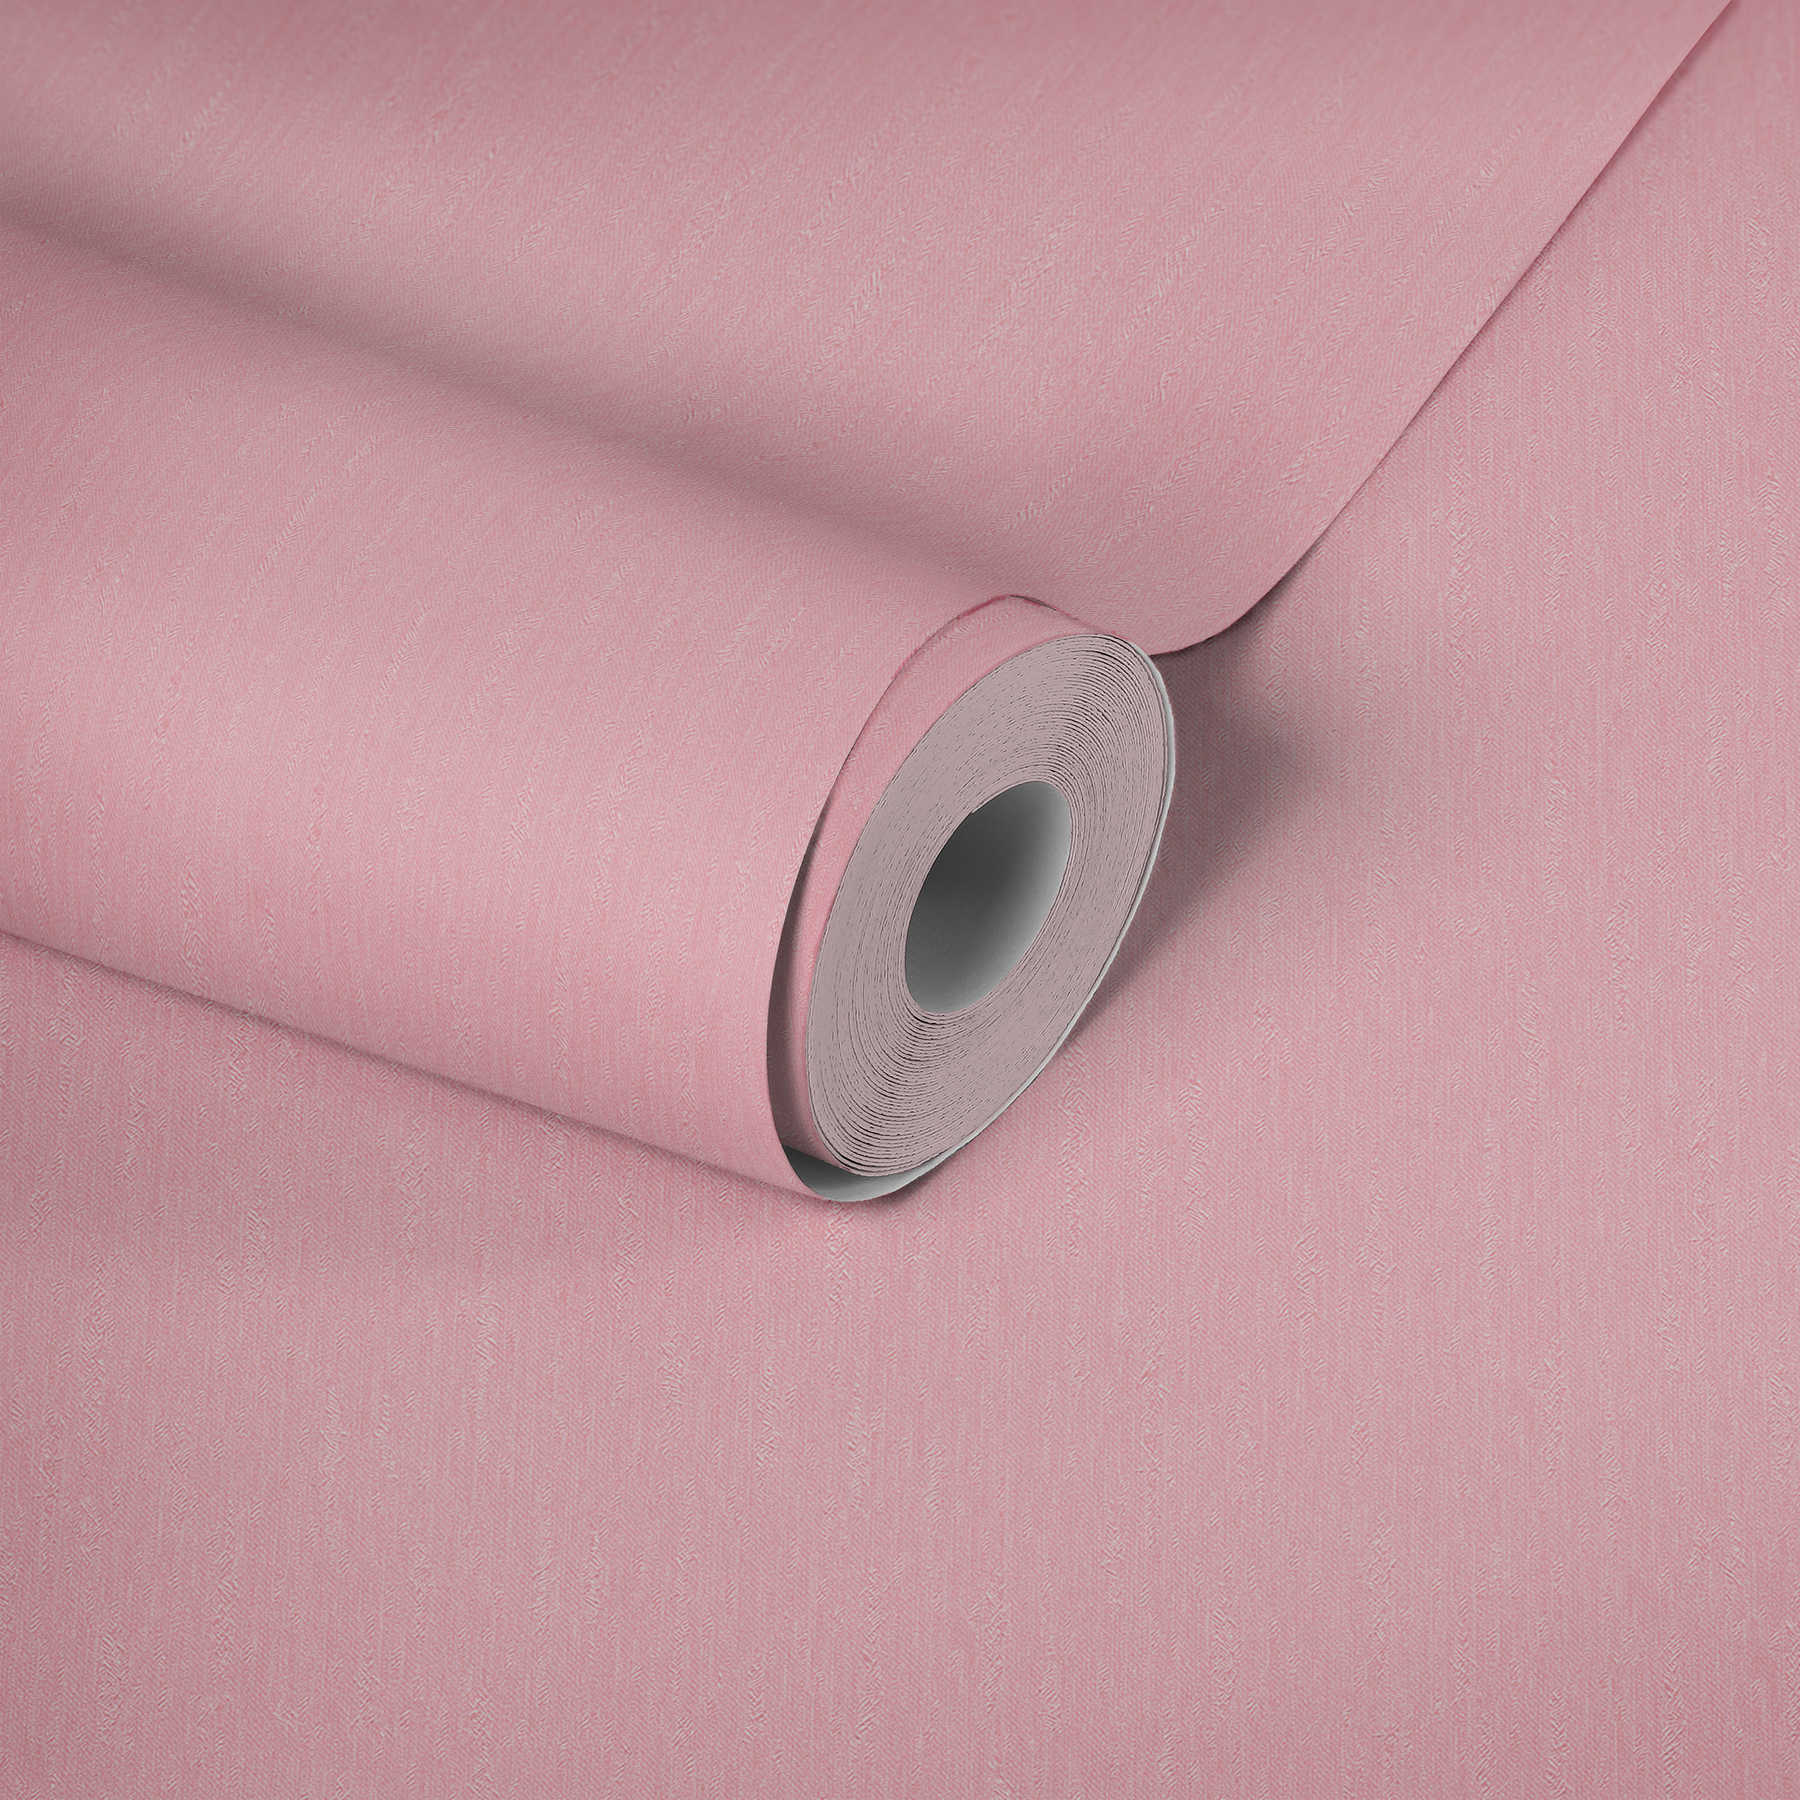             Papel pintado no tejido rosa liso con superficie texturizada
        